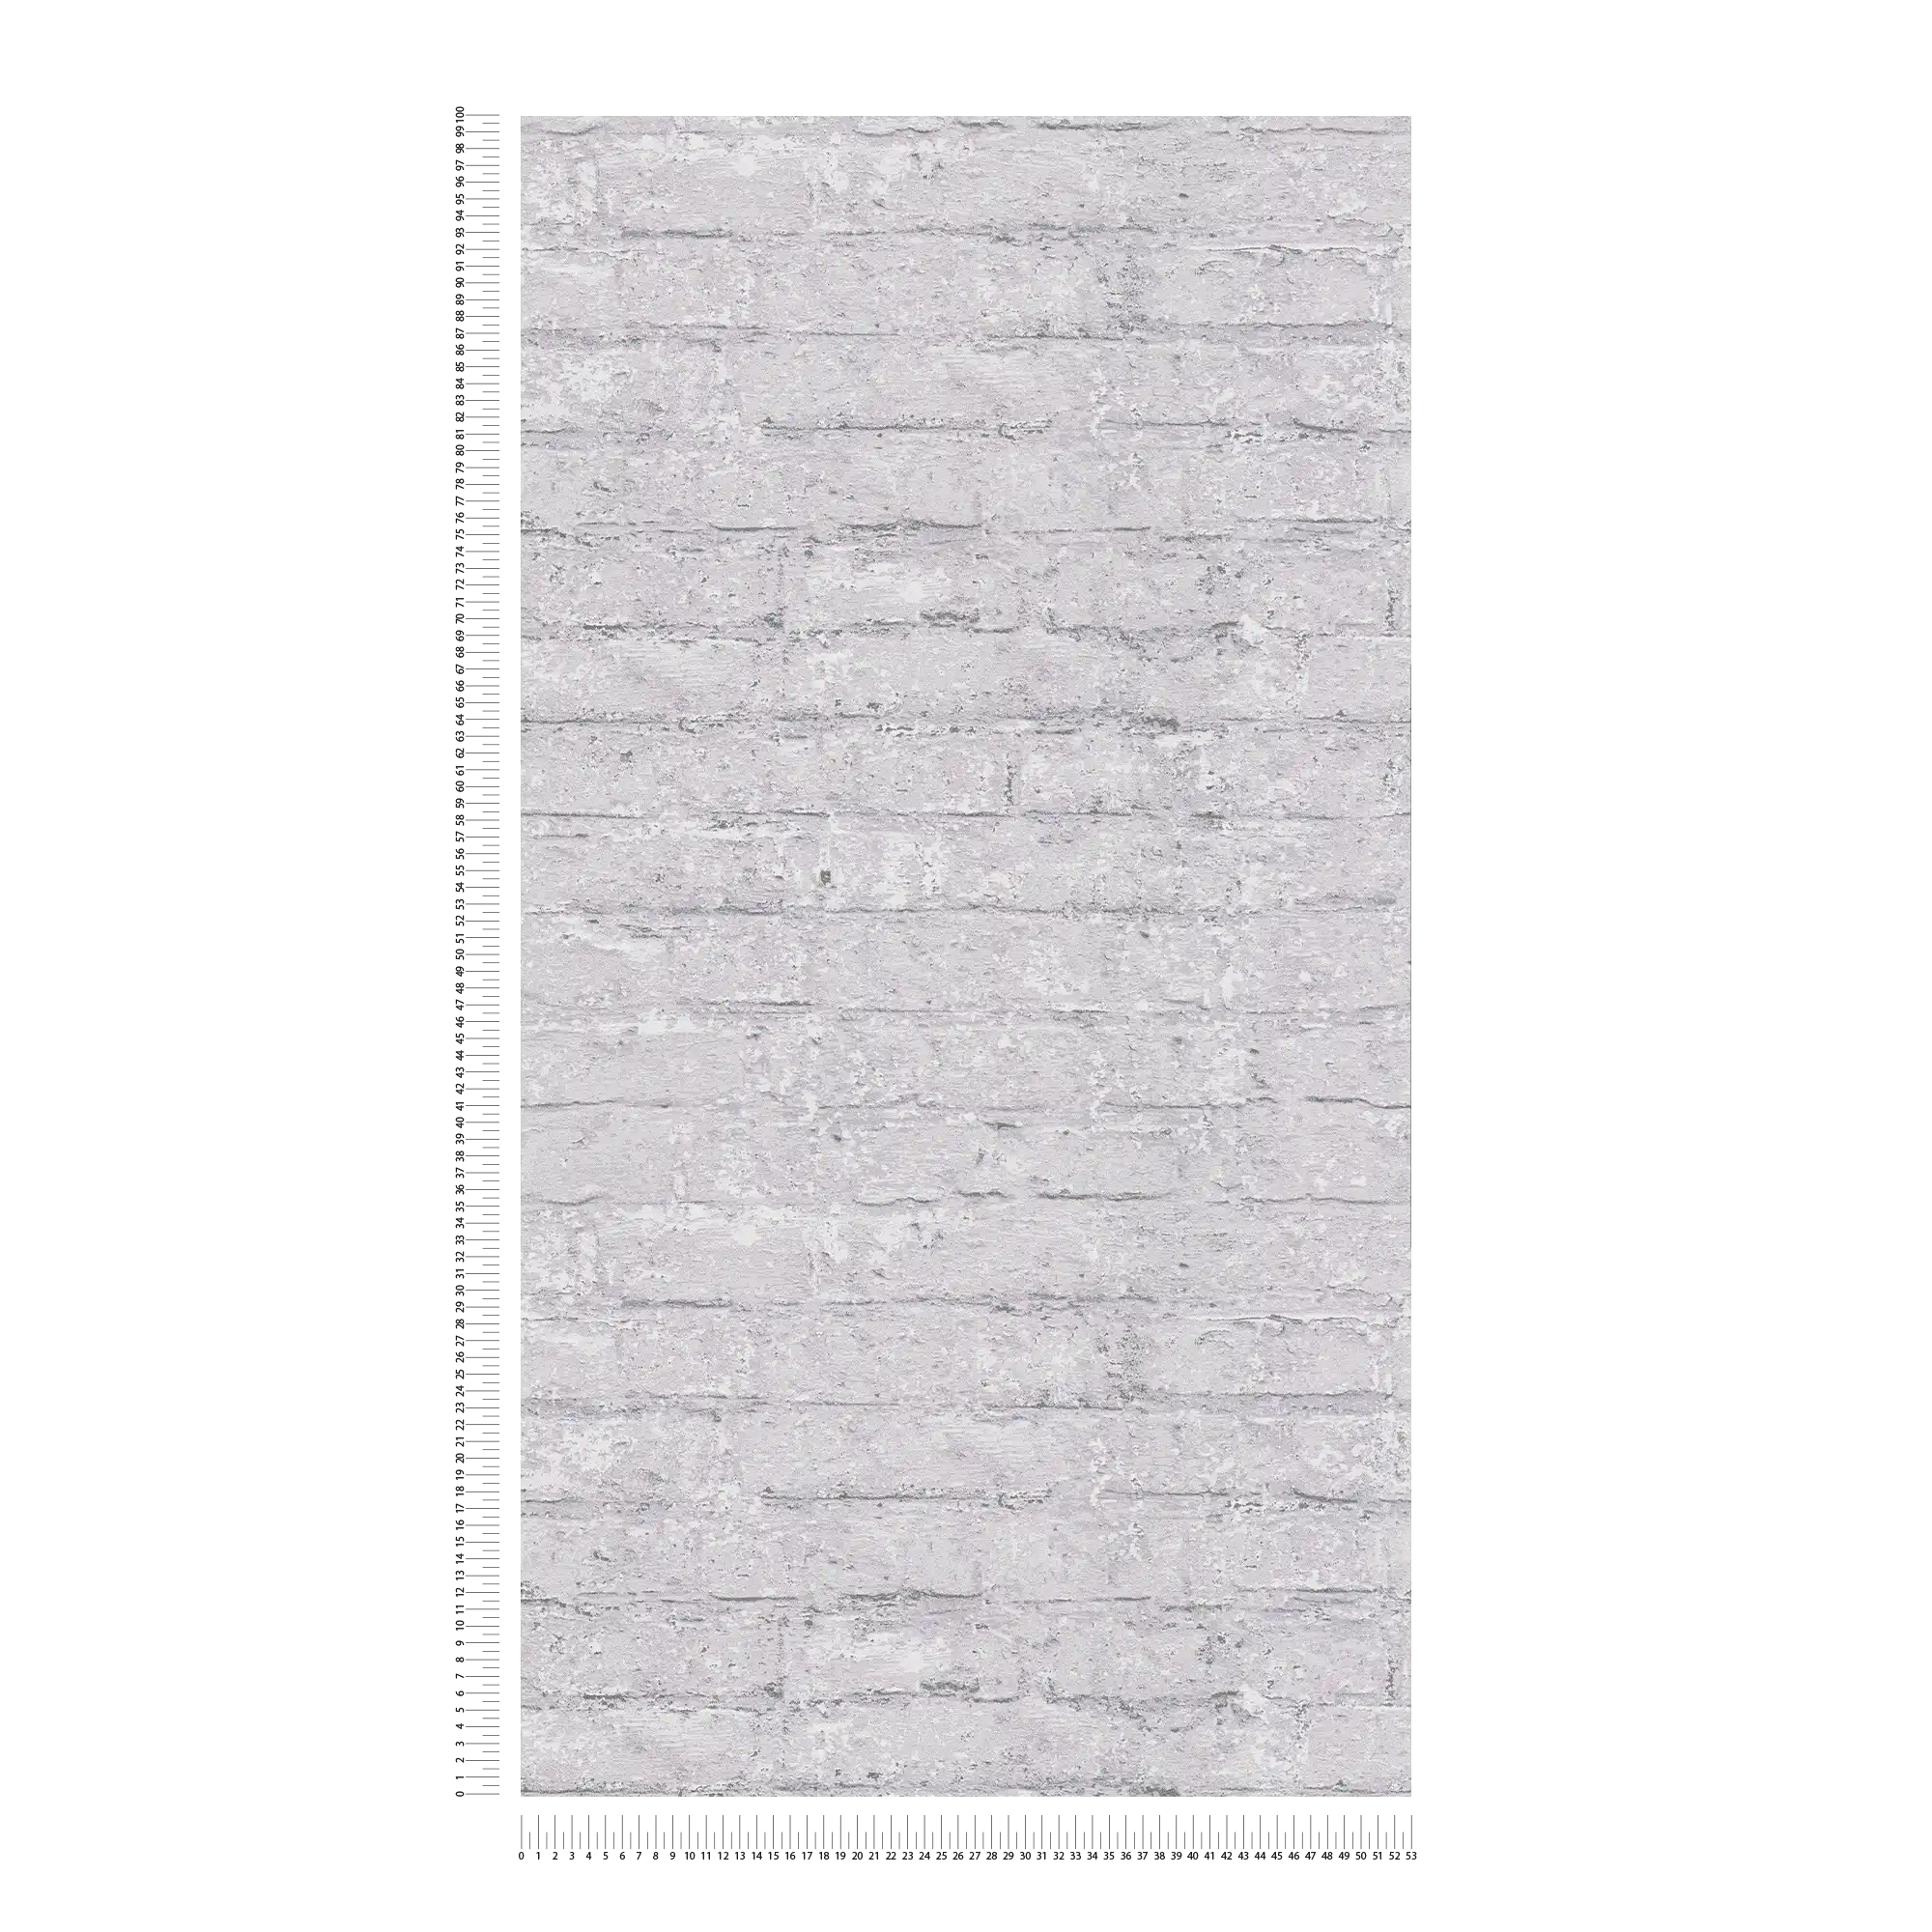             Carta da parati leggera in tessuto non tessuto con un delicato effetto mattone - grigio chiaro
        